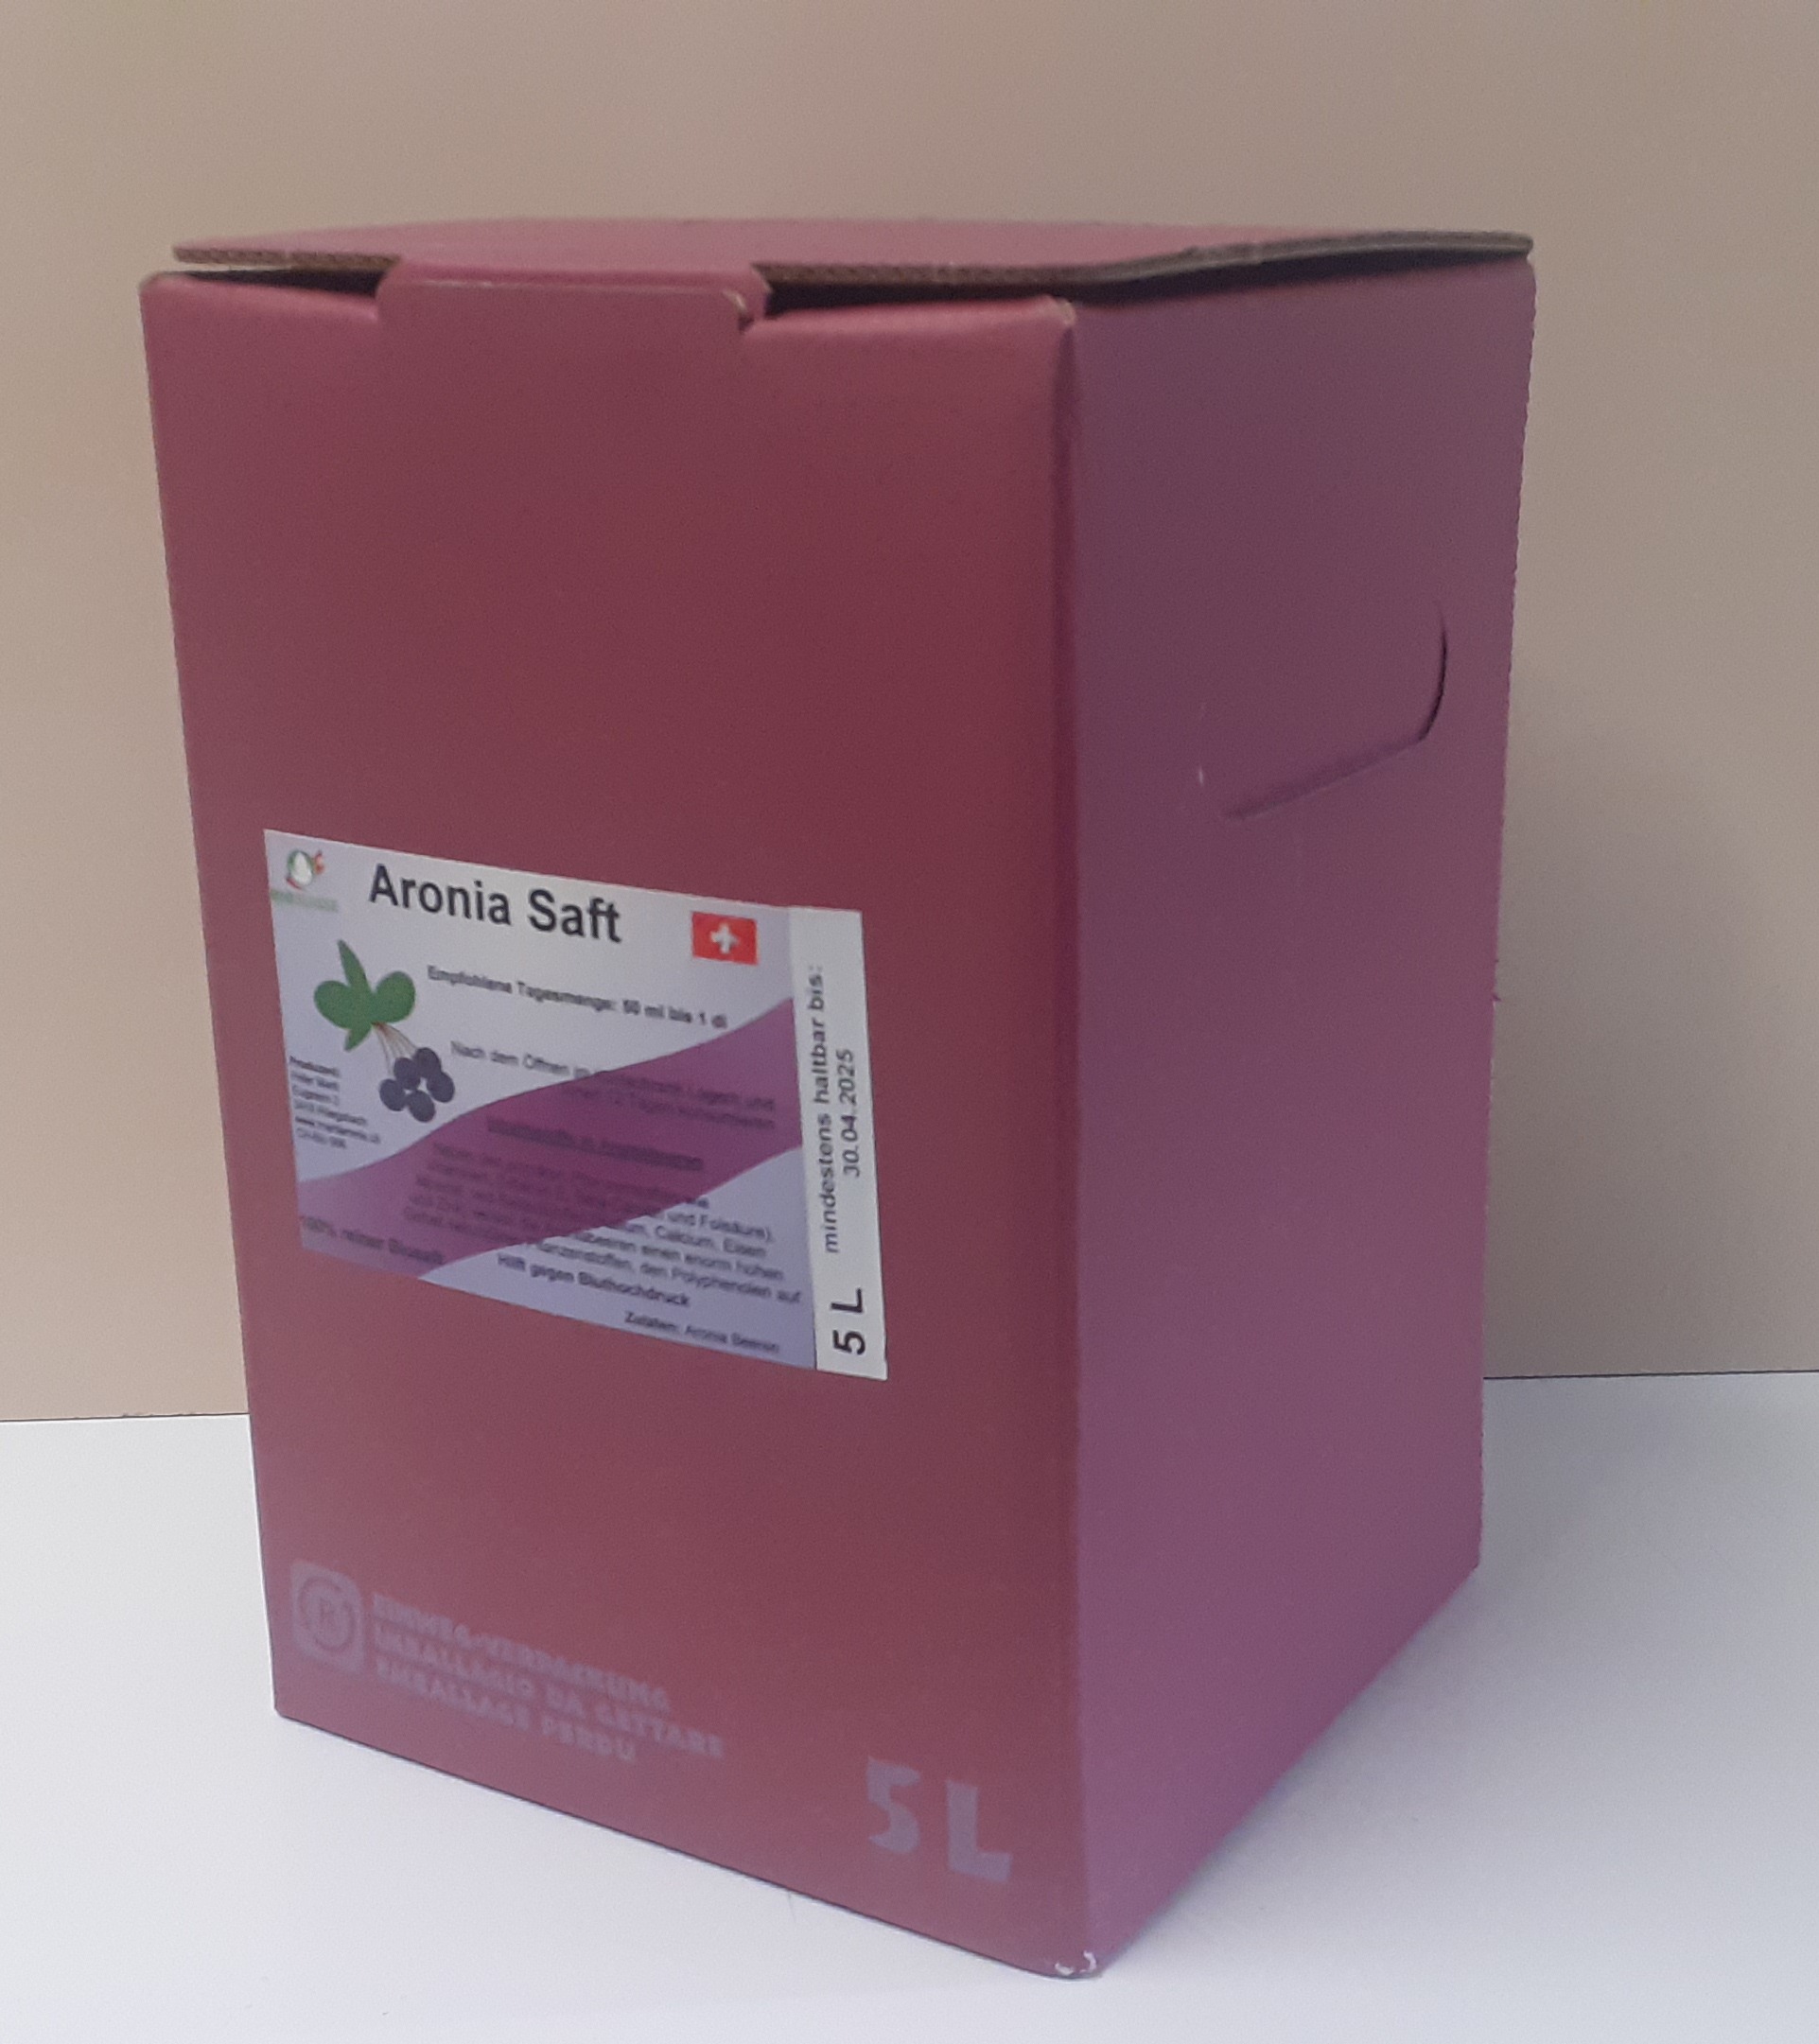 Aronia Saft 5 Liter Bag in Box